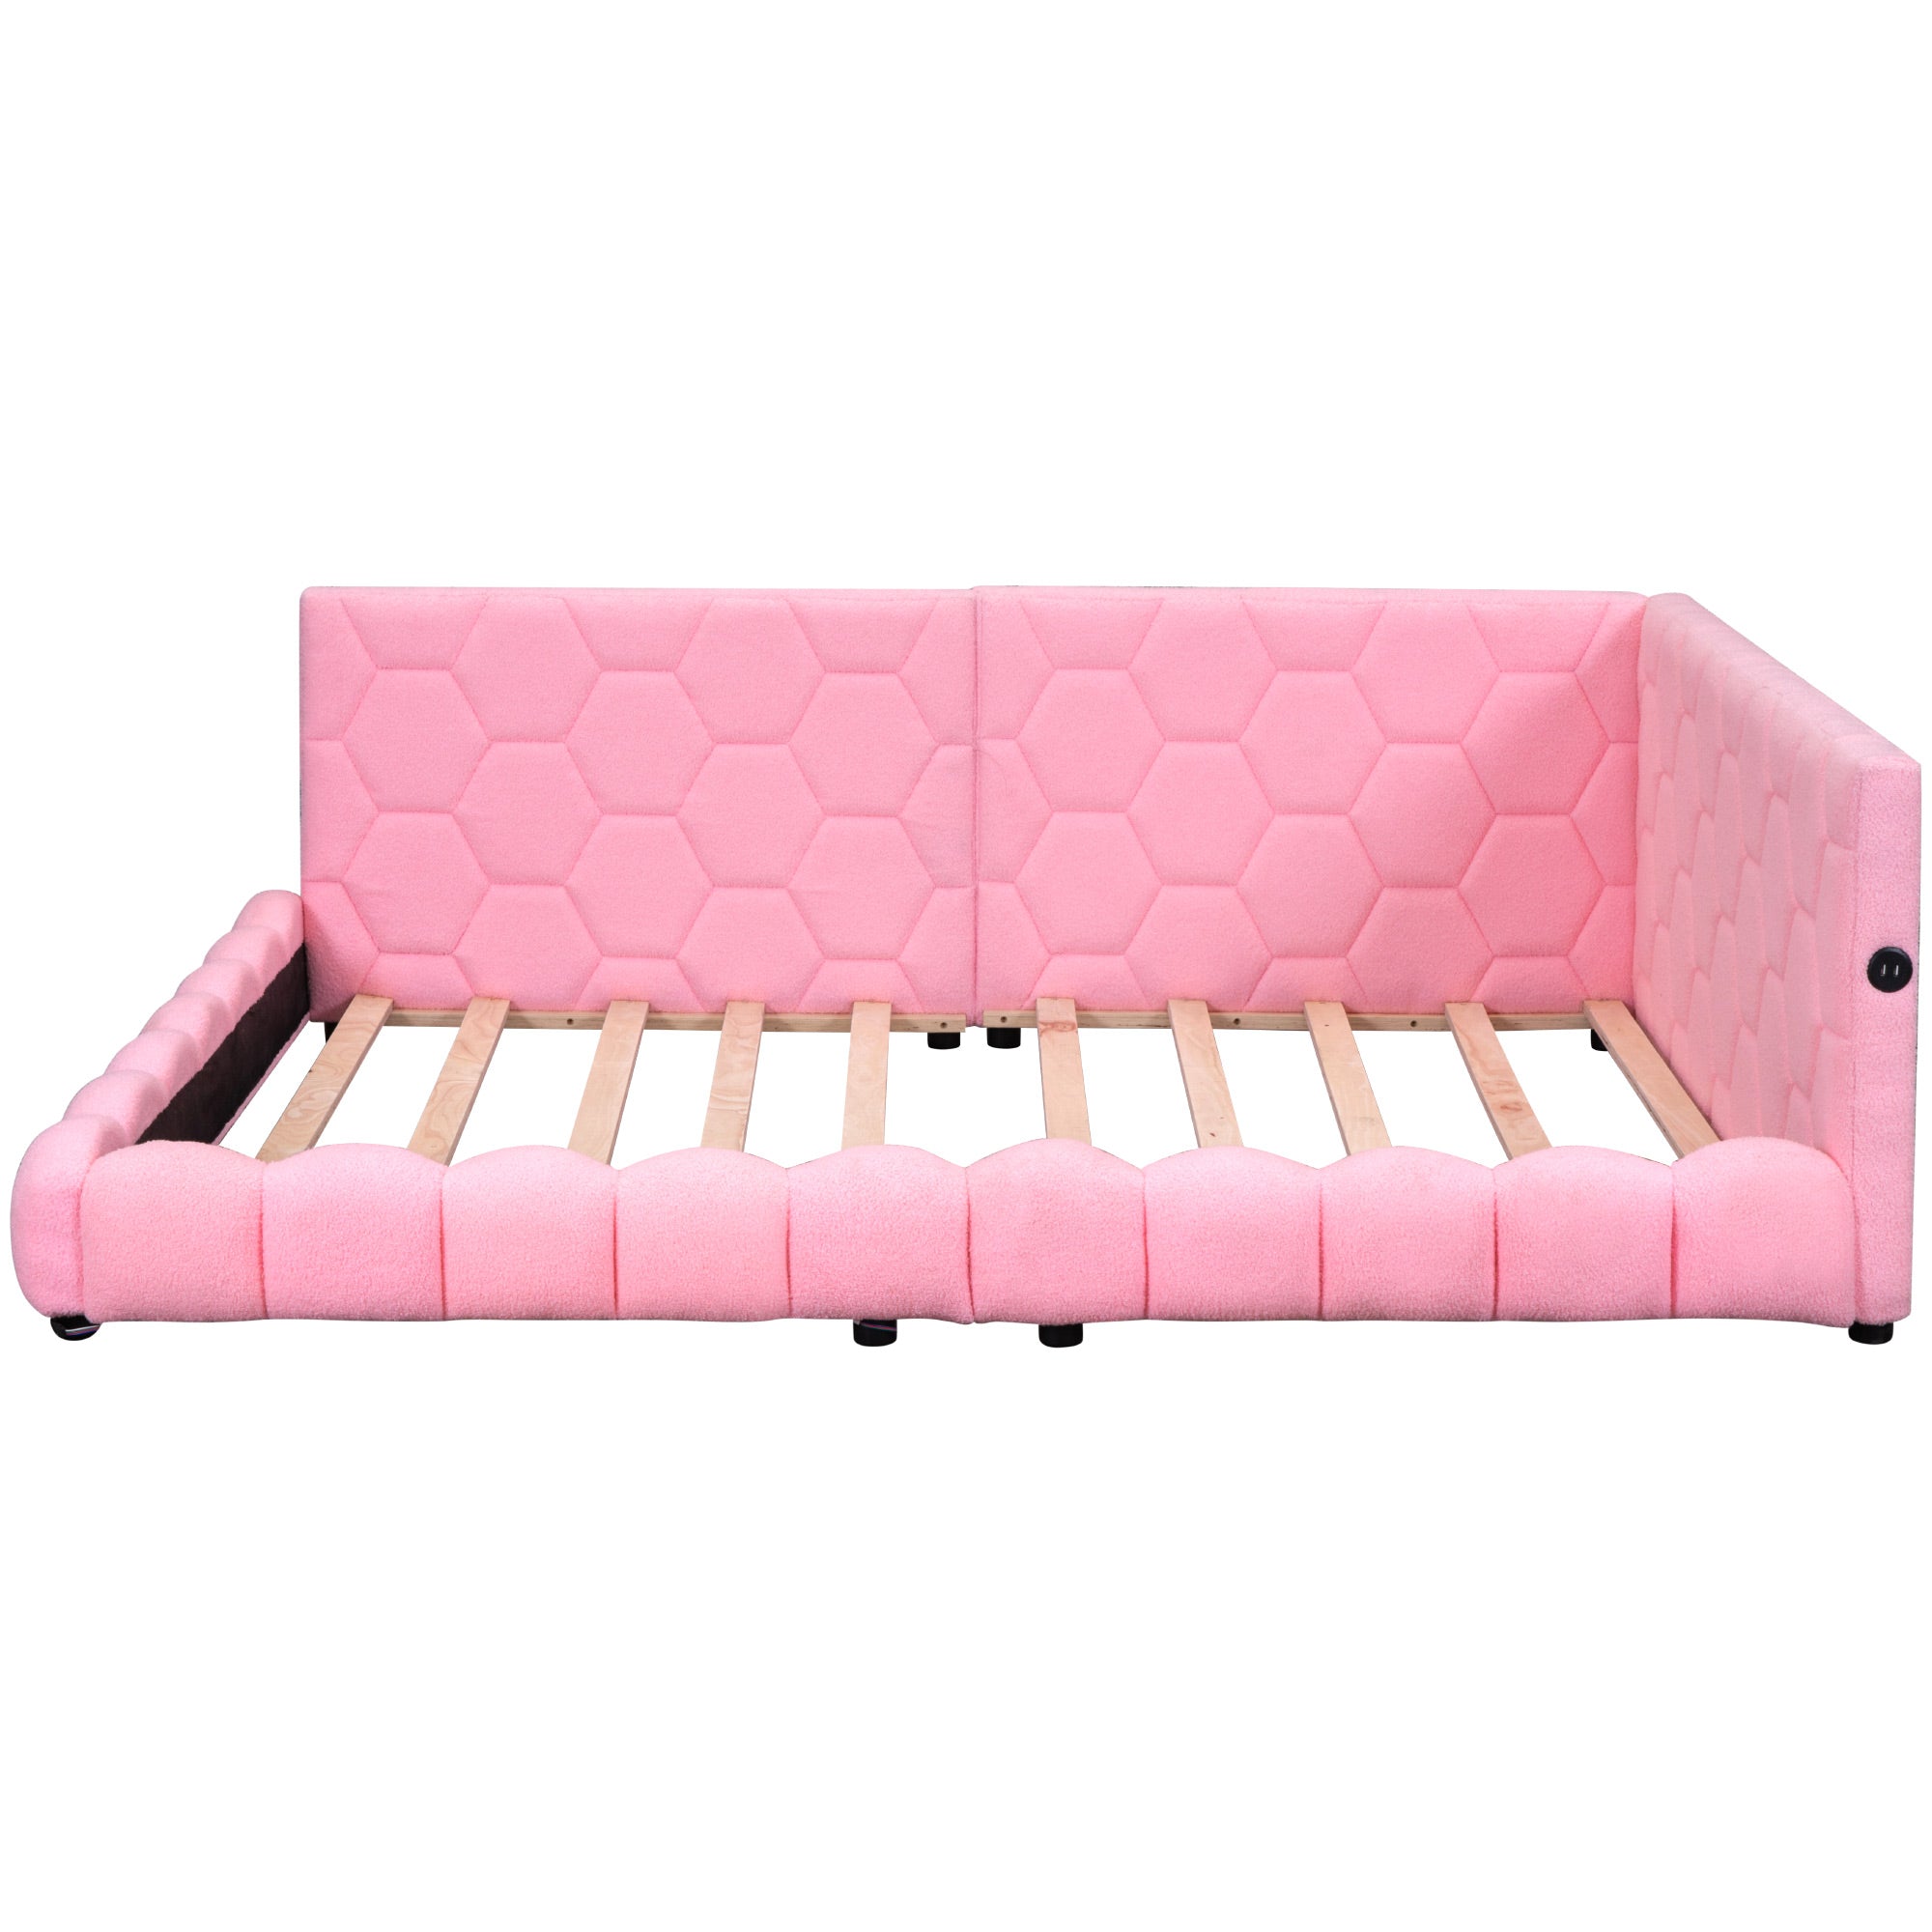 Bellemave Full Size Upholstered Platform Bed with USB Ports and LED Belt